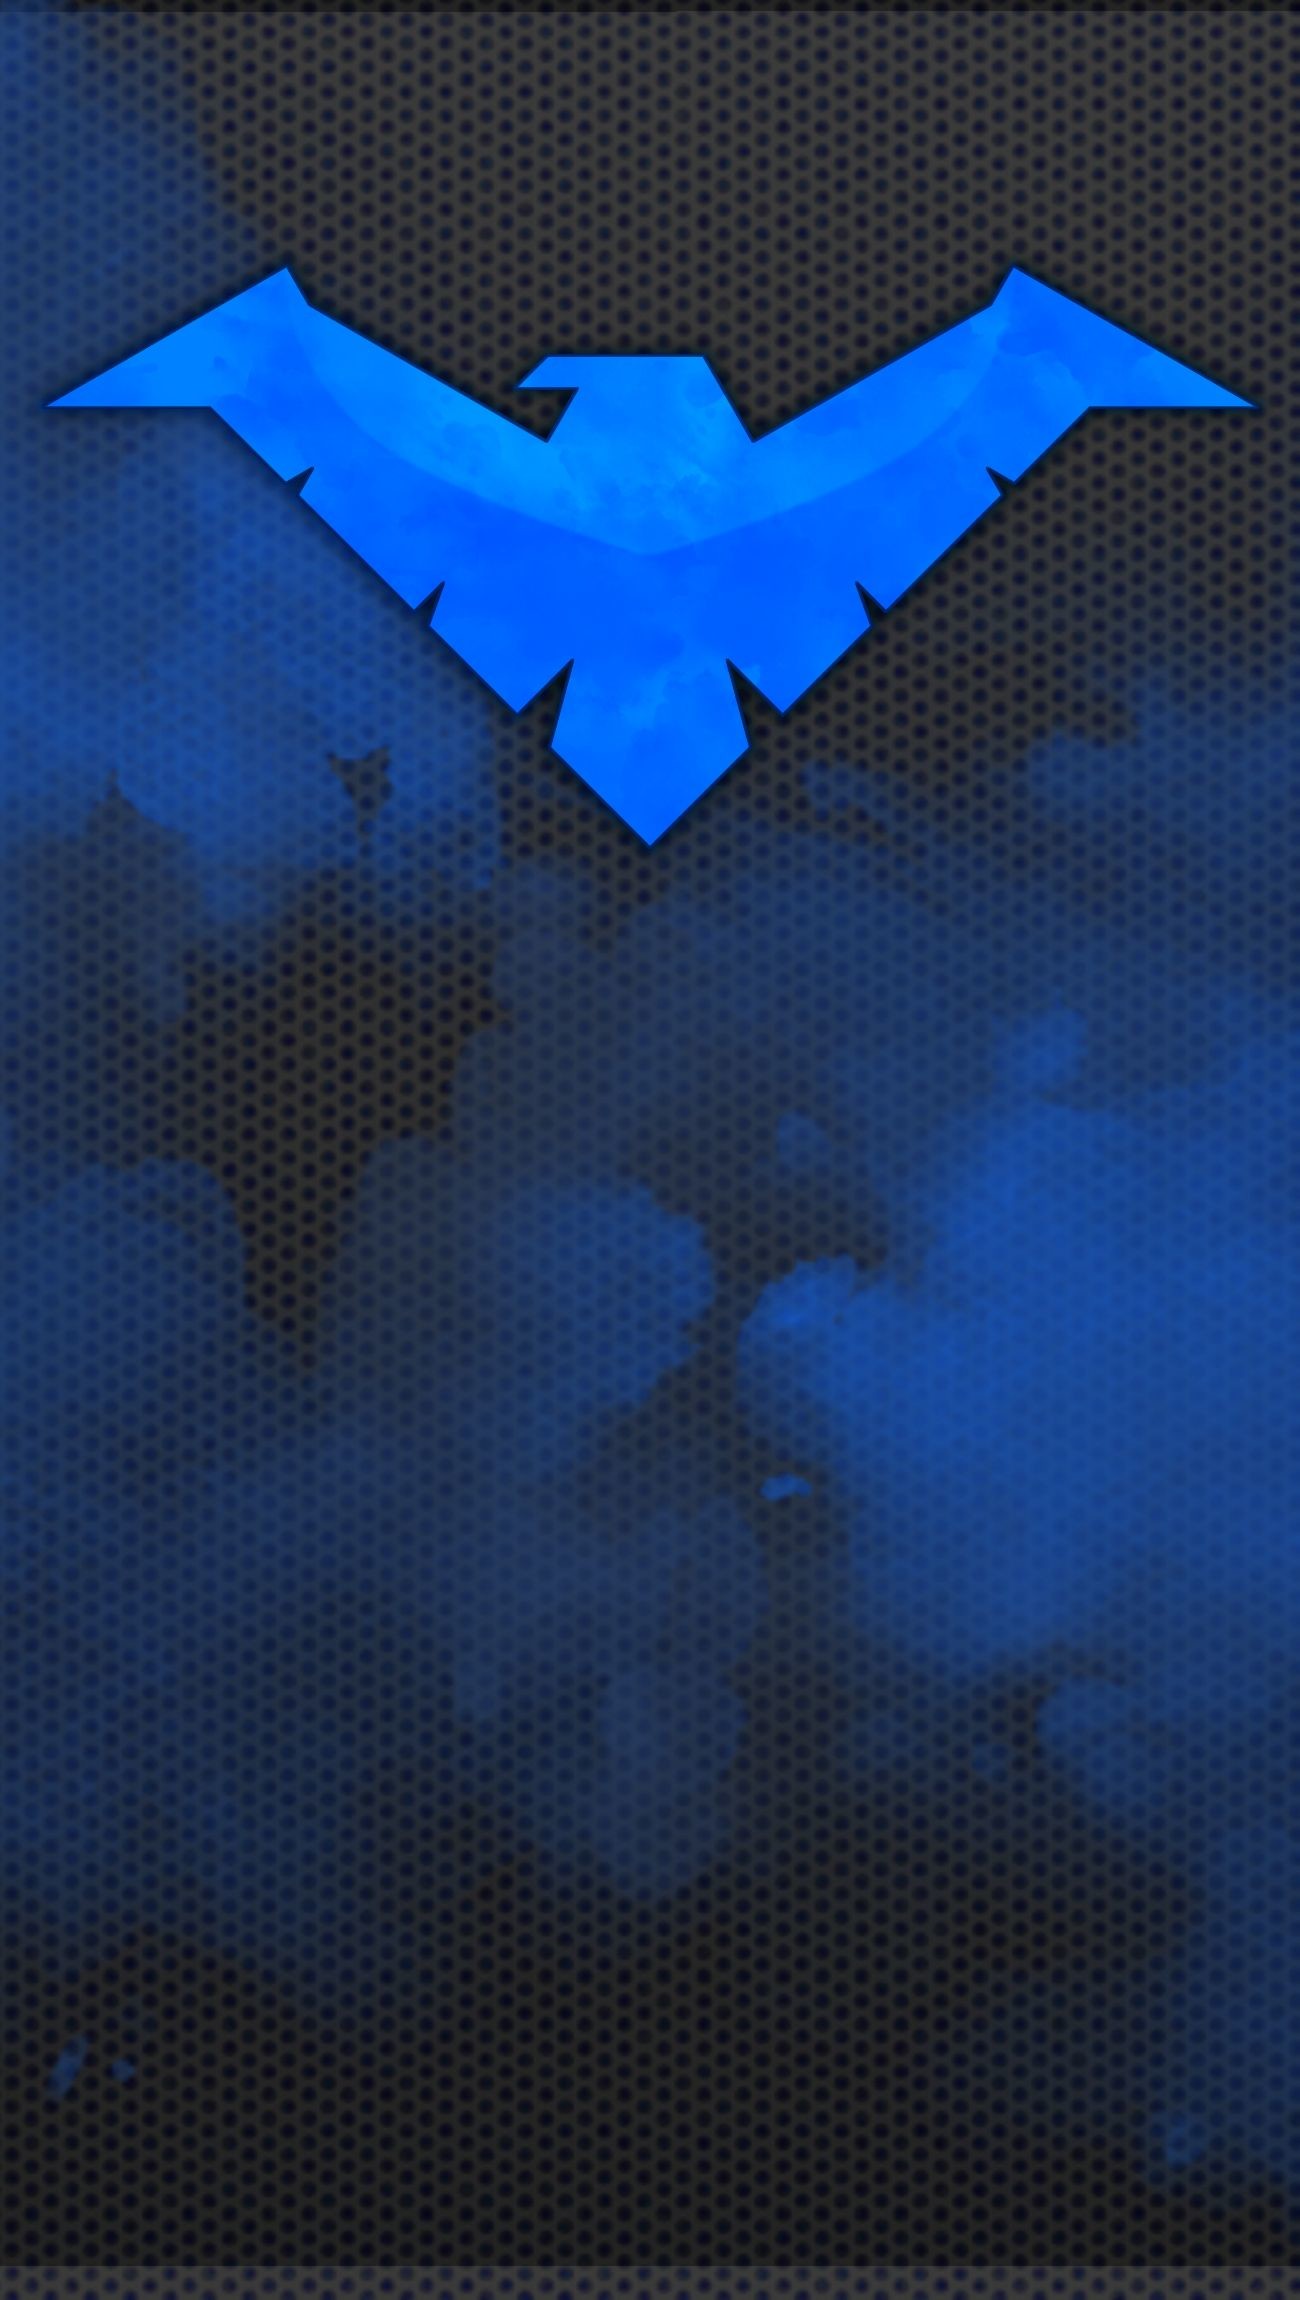 1300x2300 1131x707 Nightwing Wallpaper by JeremyMallin on DeviantArt">